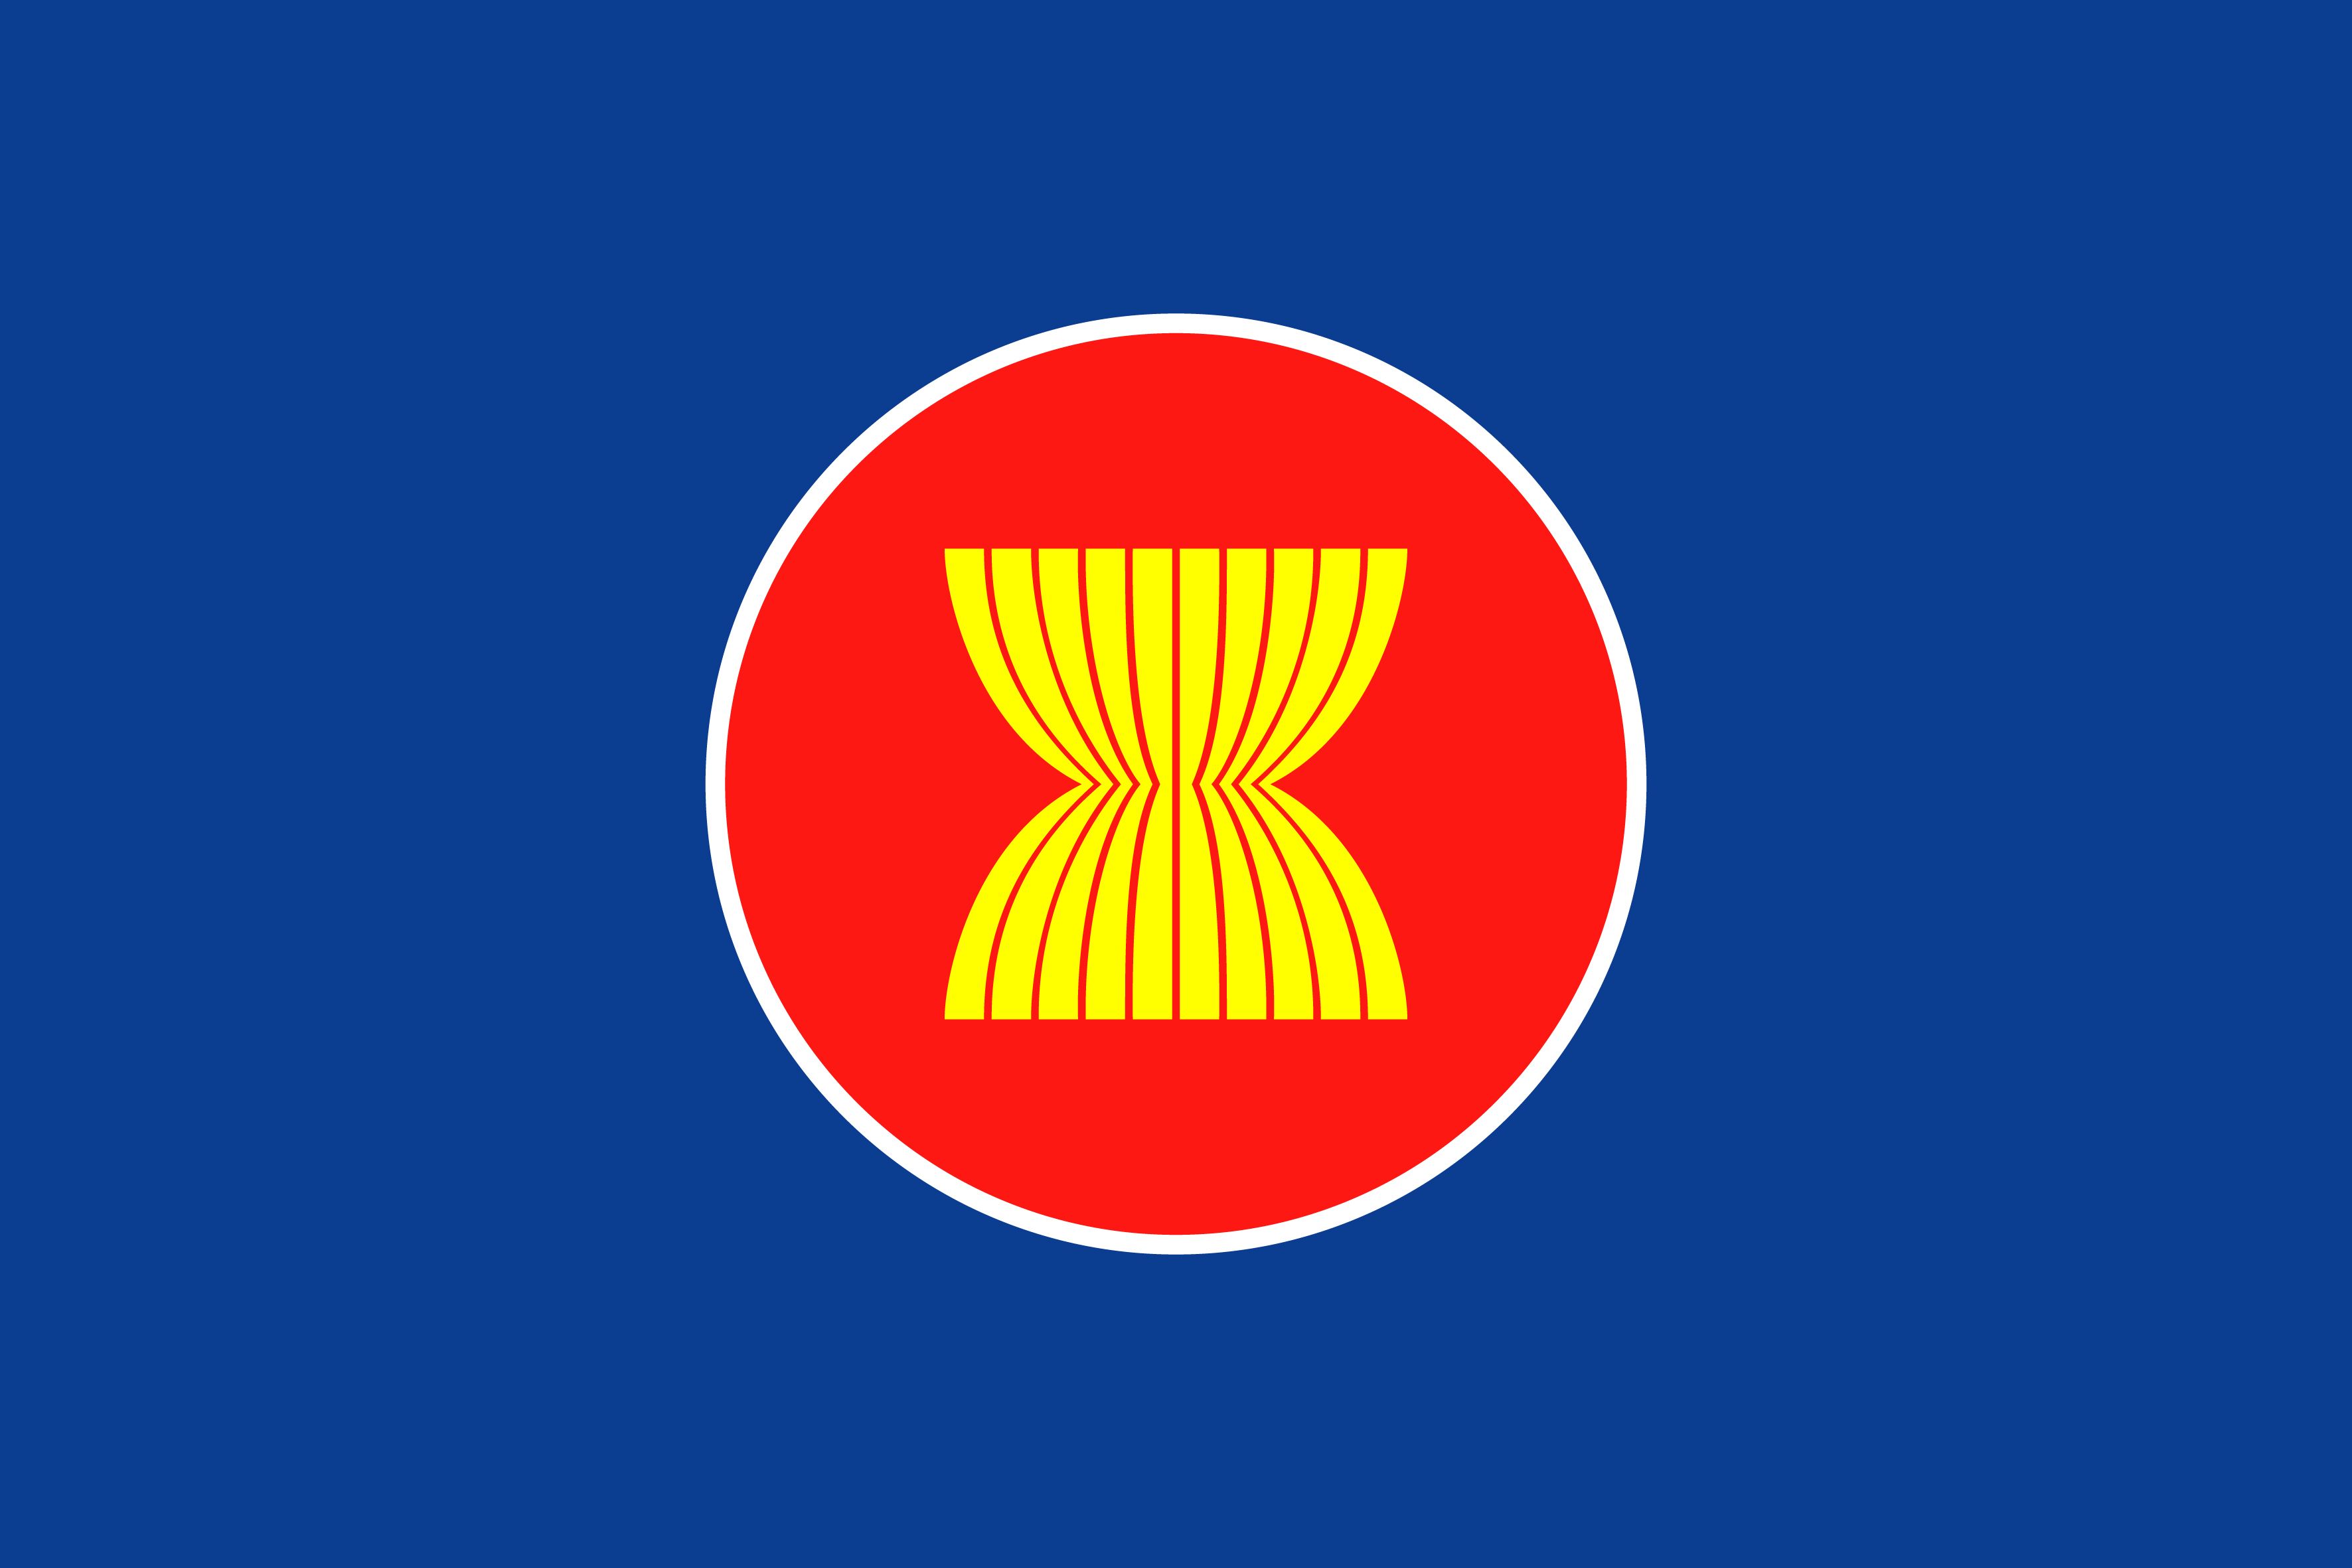 Lá cờ ASEAN: Với thiết kế đặc trưng, lá cờ ASEAN mang thông điệp đoàn kết với các nước thành viên. Năm 2024, lá cờ này sẽ xuất hiện ở nhiều sự kiện trọng đại và đem lại sự gắn kết, nhất là khi ASEAN đang tiến tới trở thành một cộng đồng châu Á mạnh mẽ.